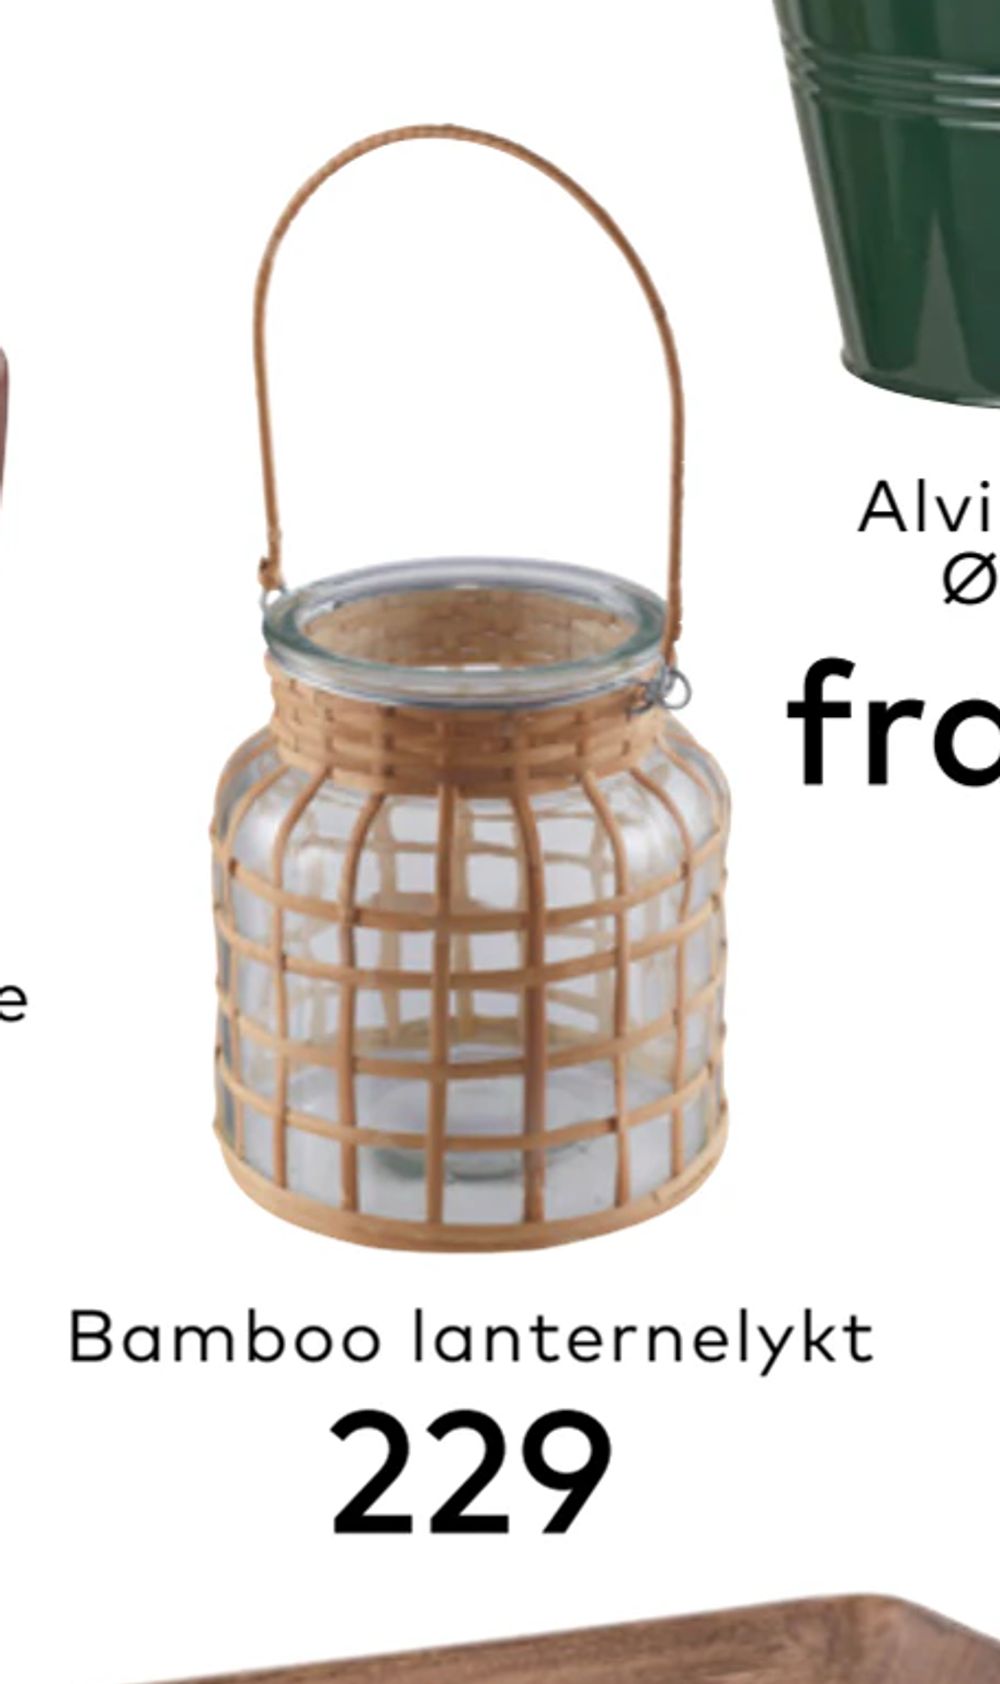 Tilbud på Bamboo lanternelykt fra Skeidar til 229 kr